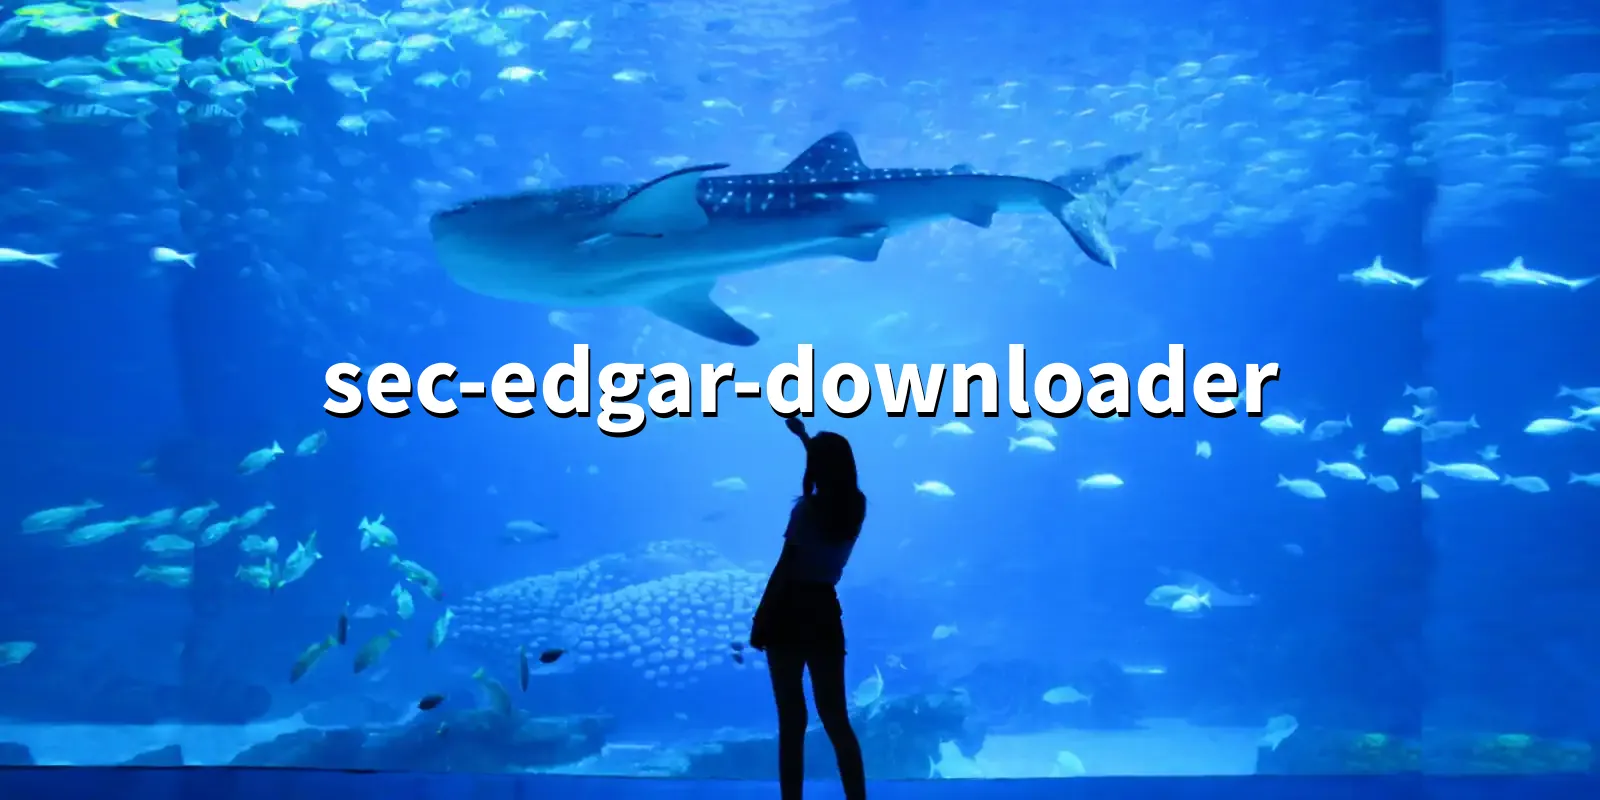 /pkg/s/sec-edgar-downloader/sec-edgar-downloader-banner.webp